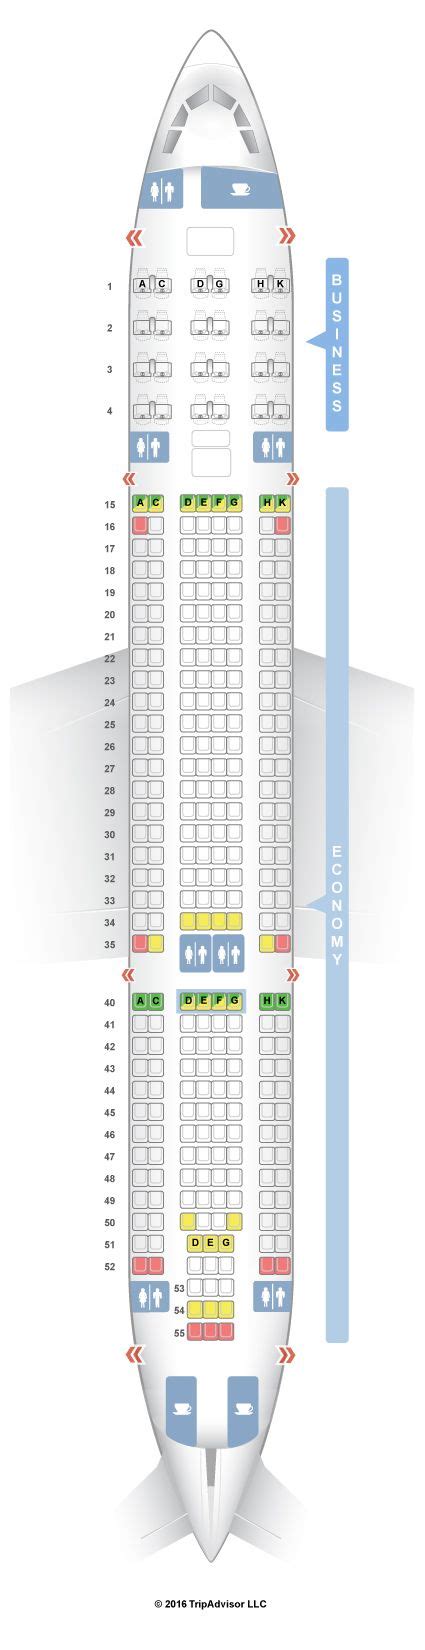 Seatguru Seat Map Air Europa Airbus A330 200 332 Aerolineas